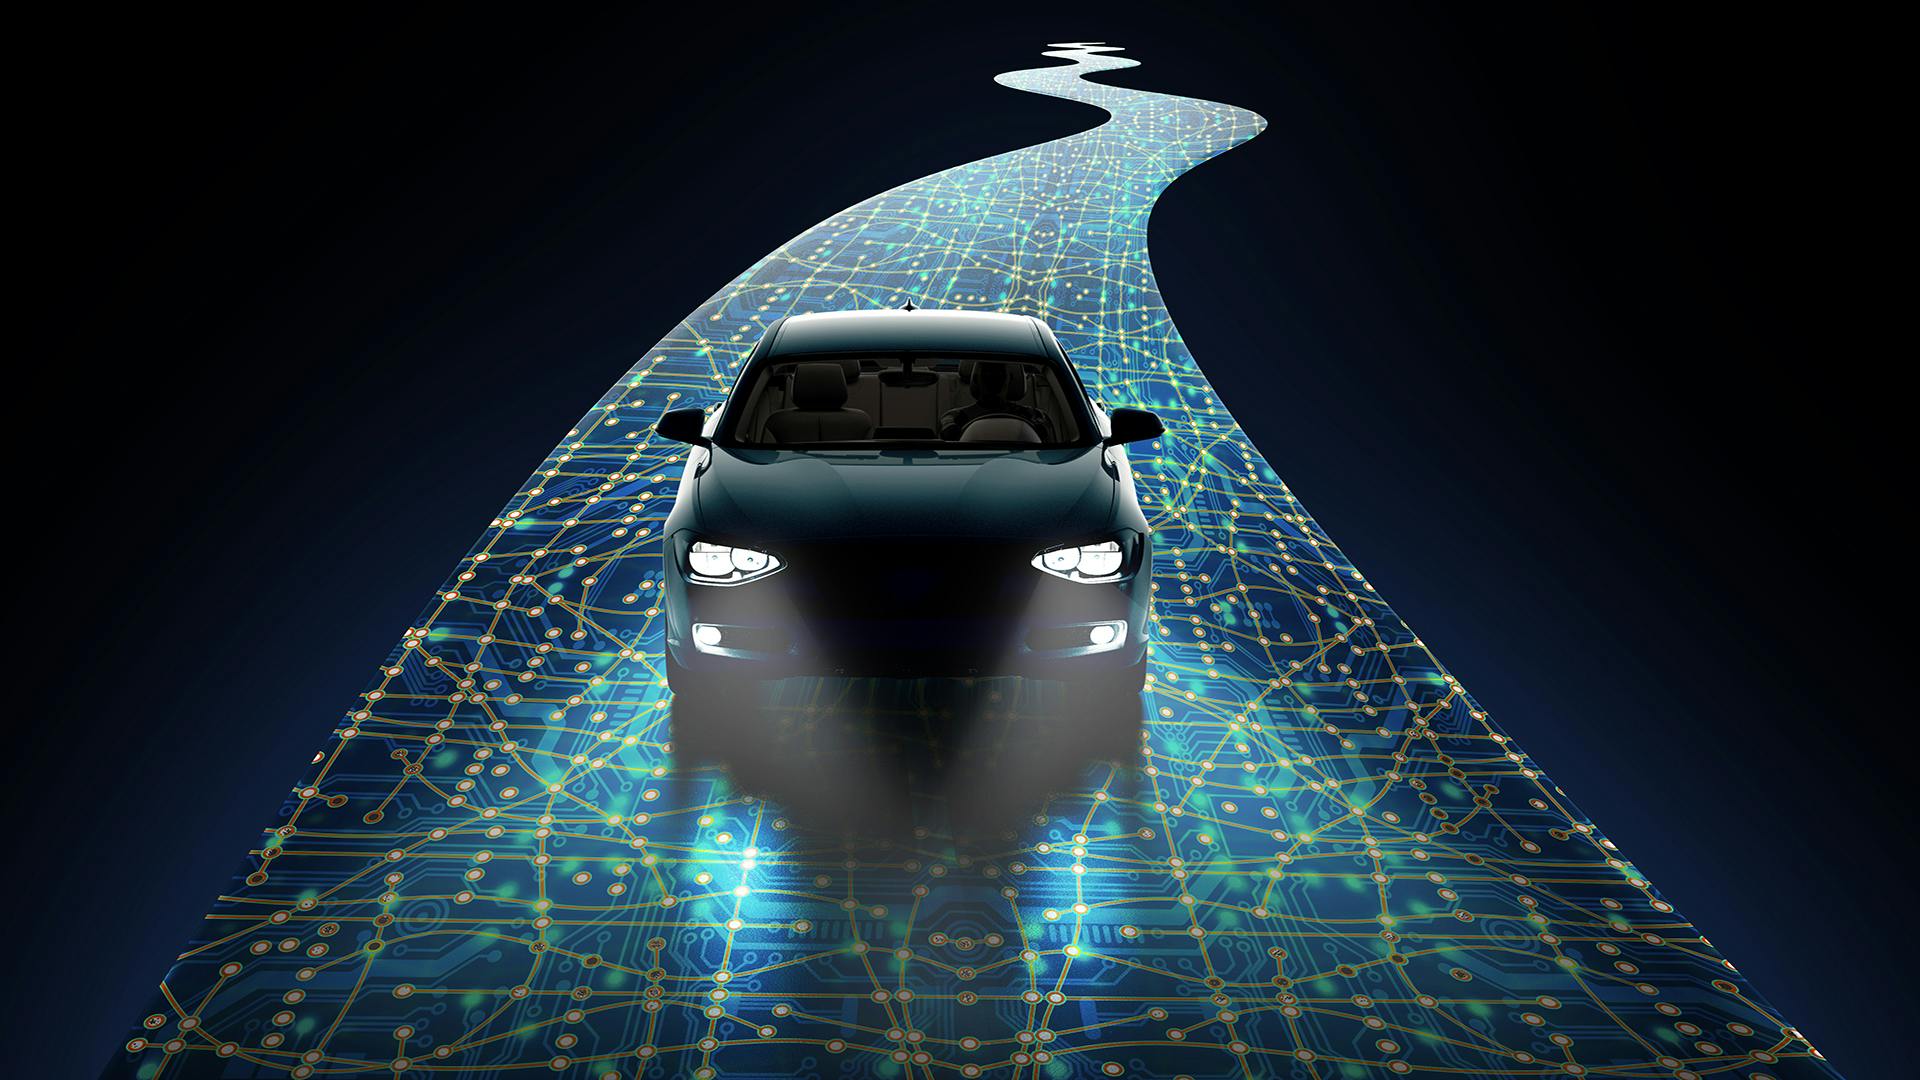 Simulare molteplici scenari per la validazione della guida autonoma